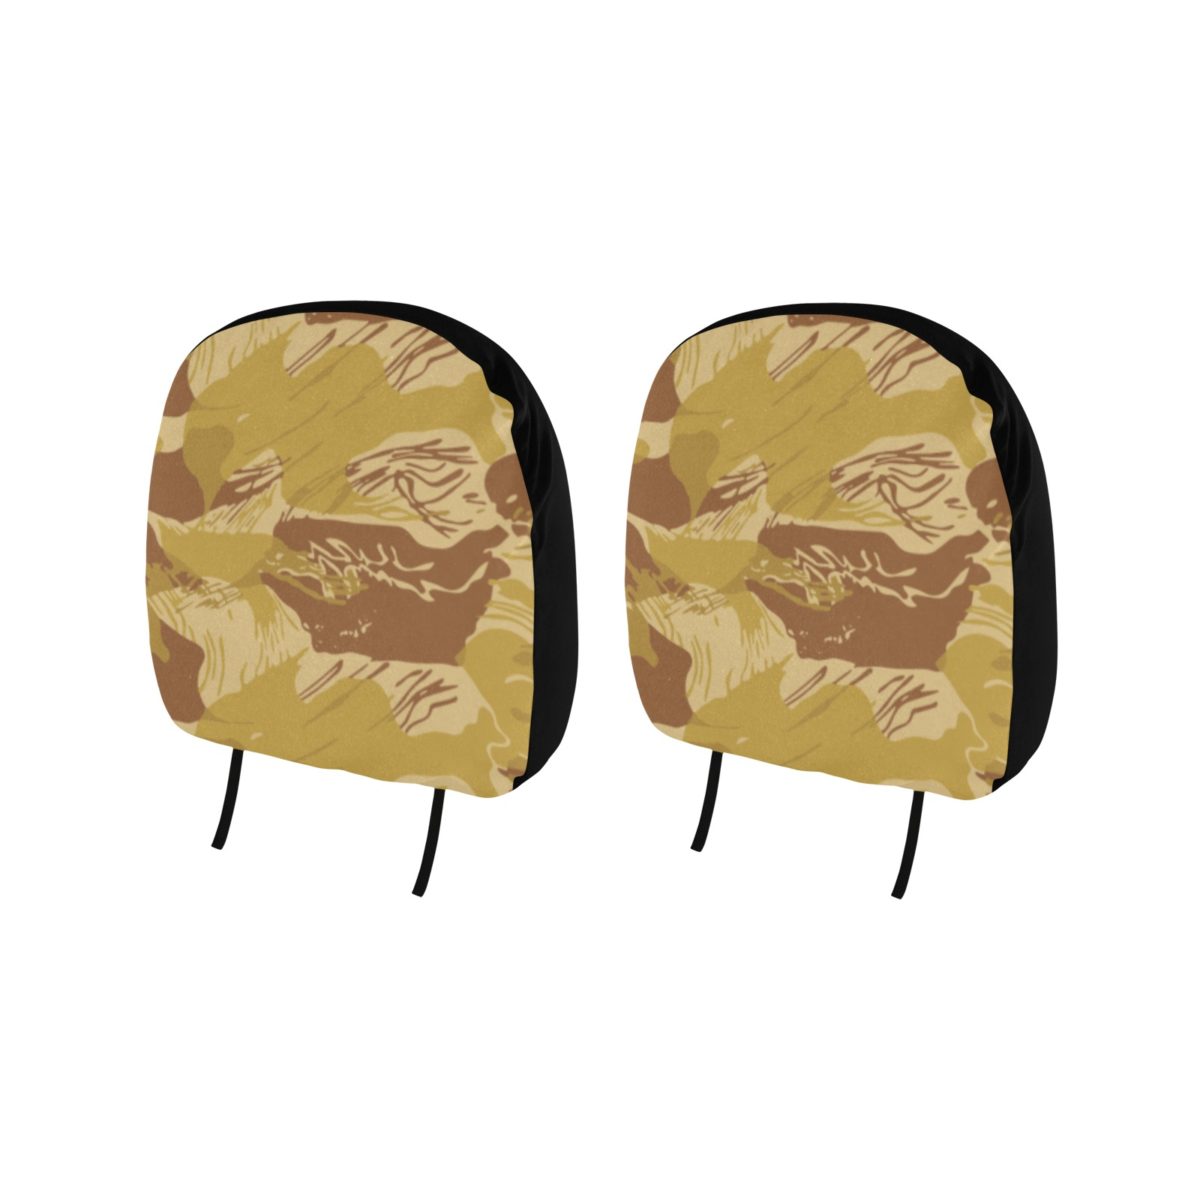 Rhodesian Brushstroke Camouflage Arid Car Headrest Cover (2pcs)